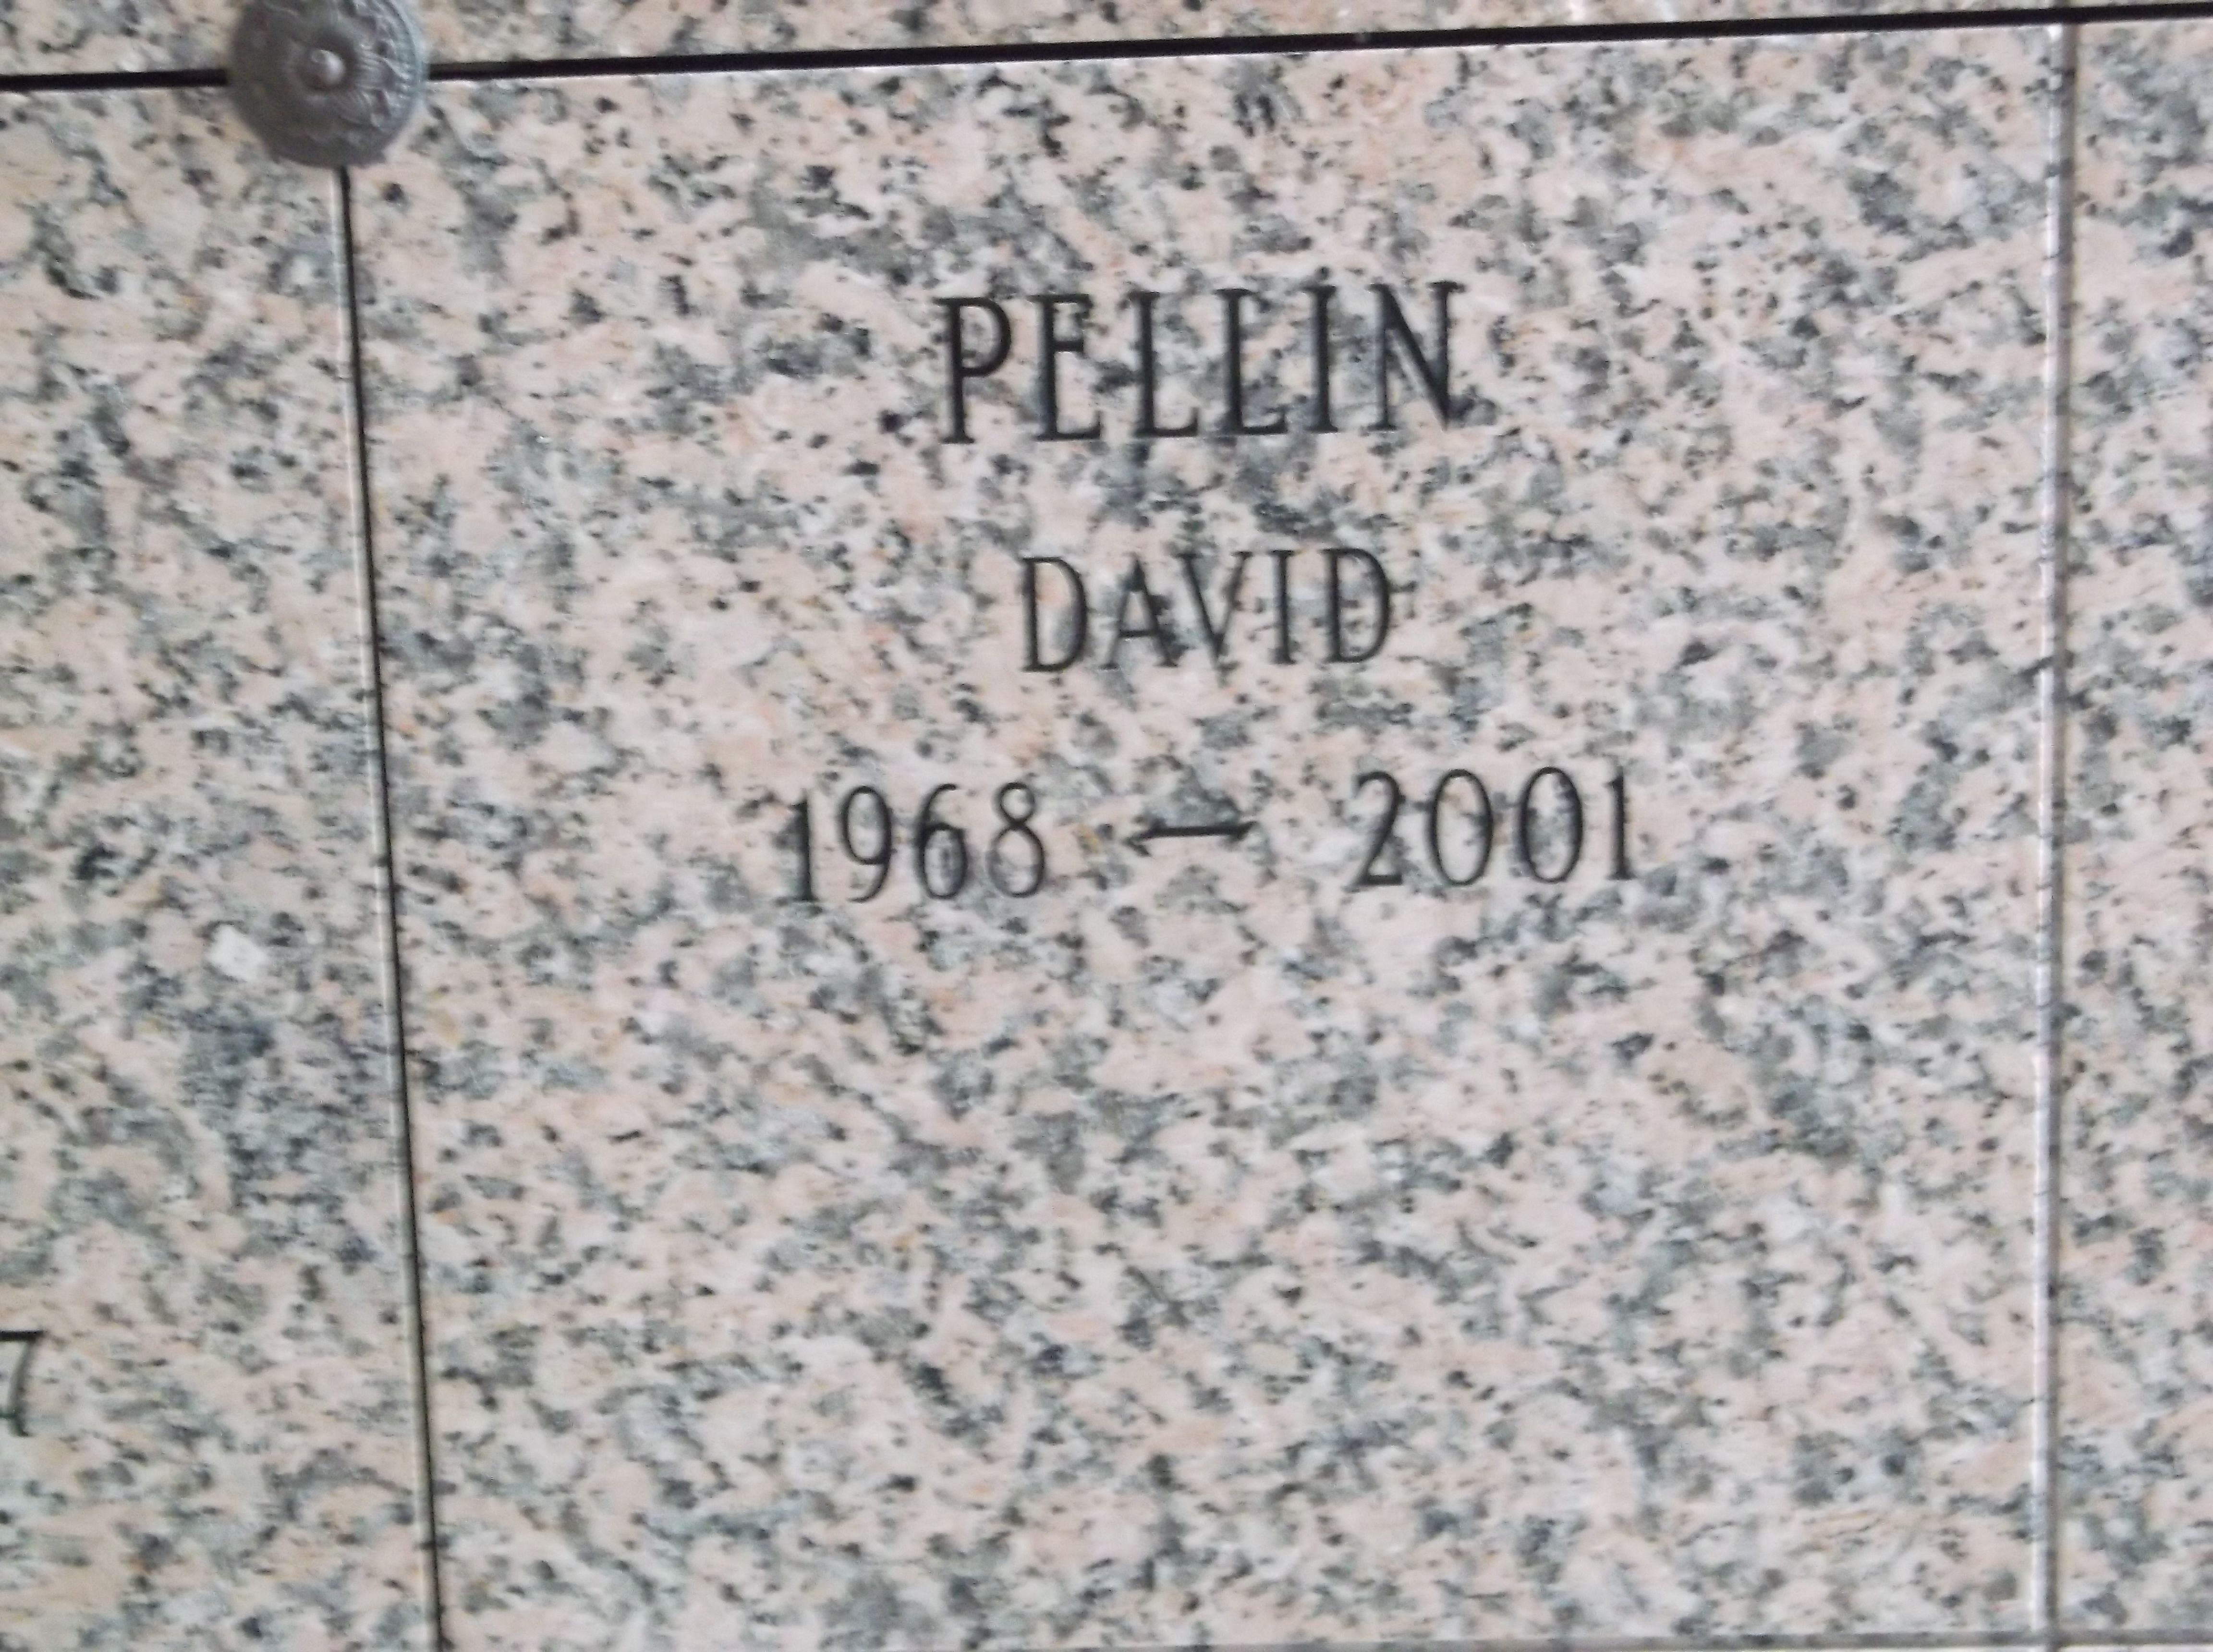 David Pellin